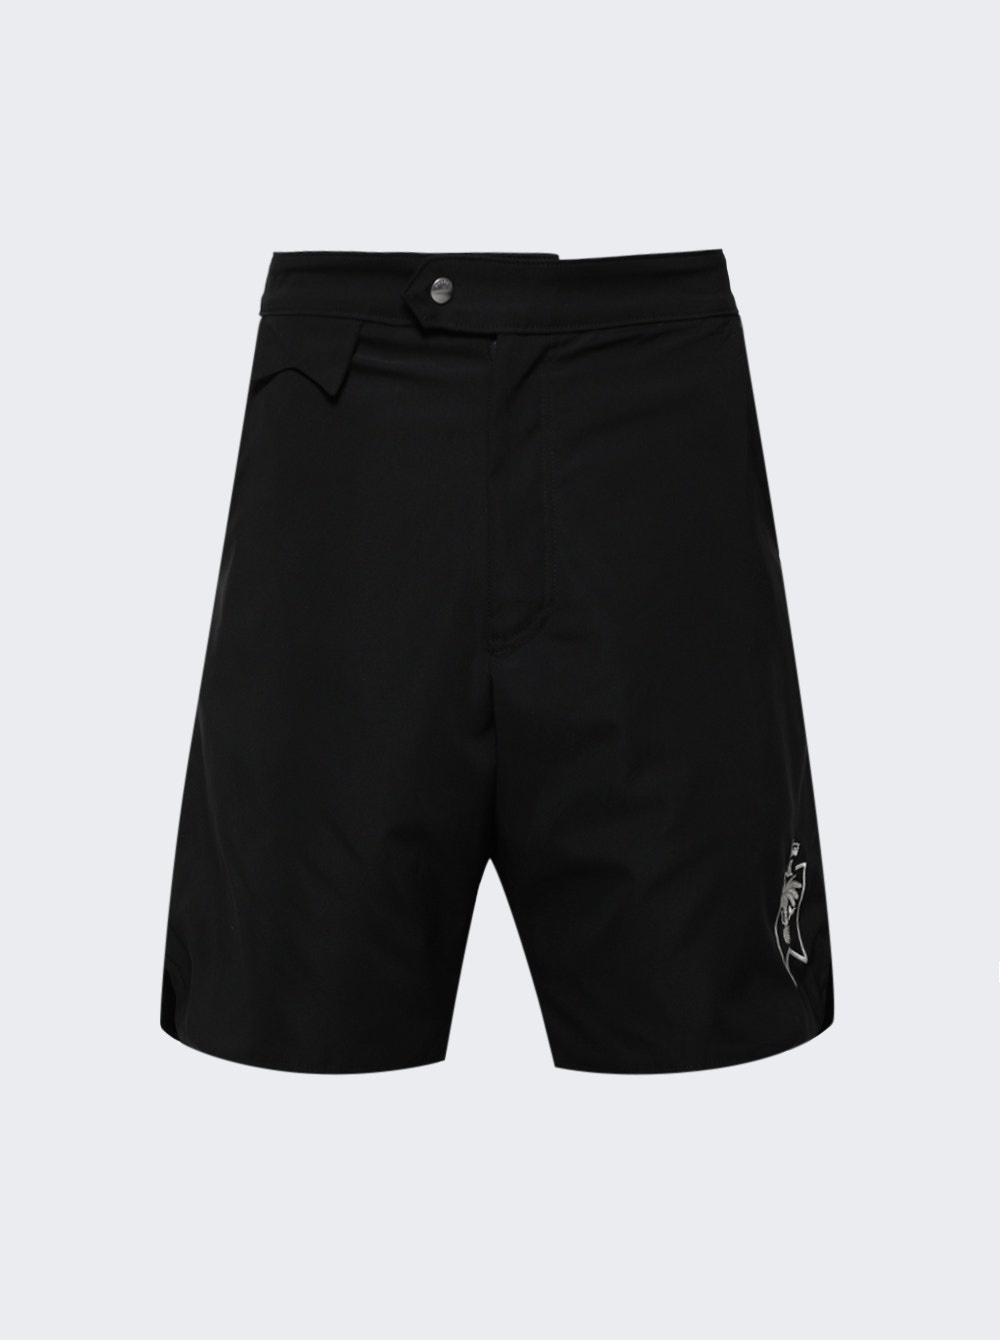 Amalfi Board Shorts Black - 1